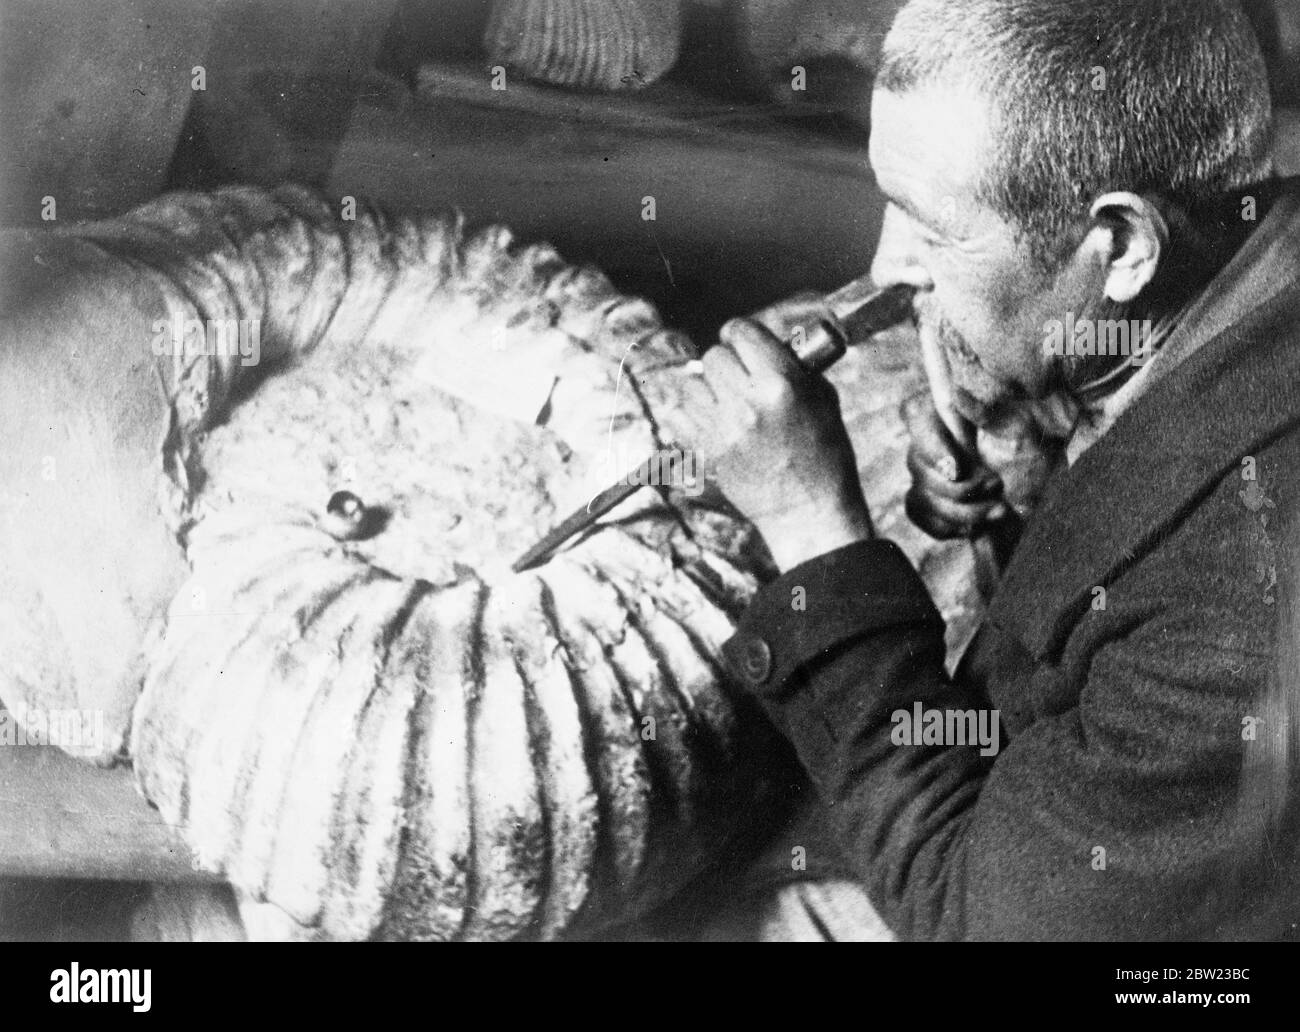 Un'ammonite (guscio fossile) di dimensioni insolitamente grandi che è stata trovata nei depositi di Jurassic nella periferia di Maikop, URSS del Caucaso settentrionale. Il guscio ha un diametro di 69 cm e pesa 75 kg. I geologi dichiarano che gli ammoniti fossili di tali grandi dimensioni sono estremamente rari. 13 ottobre 1937.[?] Foto Stock